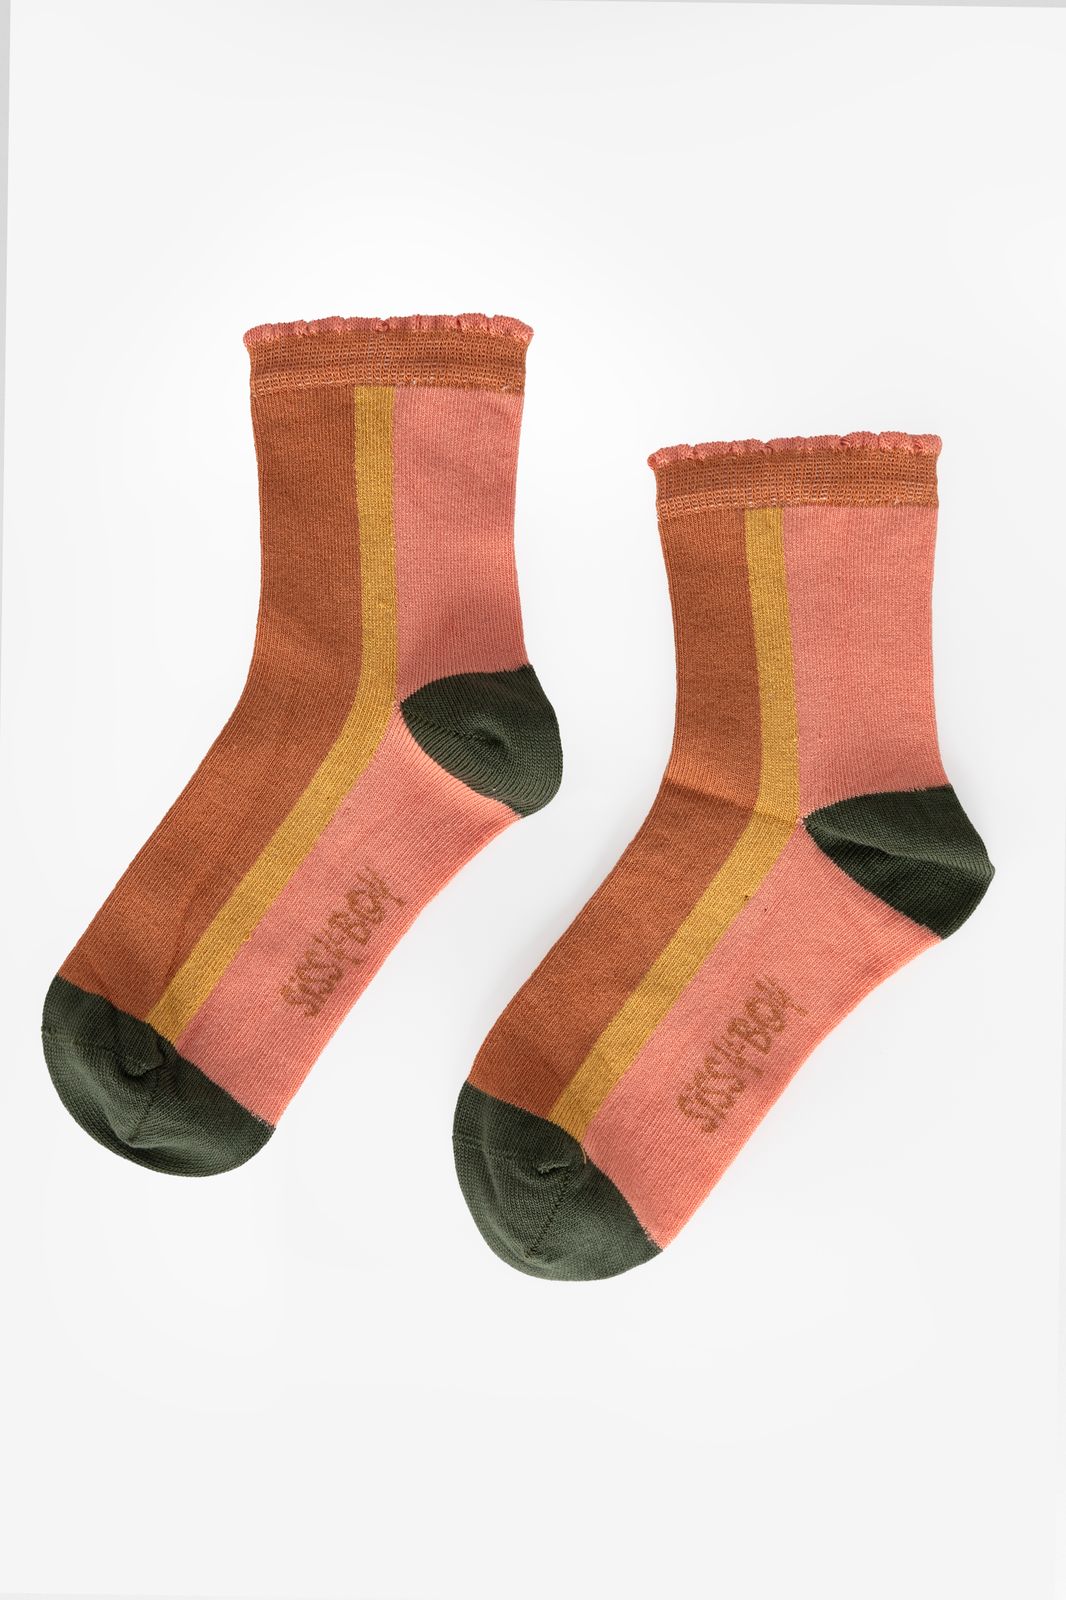 Socken in Colorblocking-Optik - rostbraun